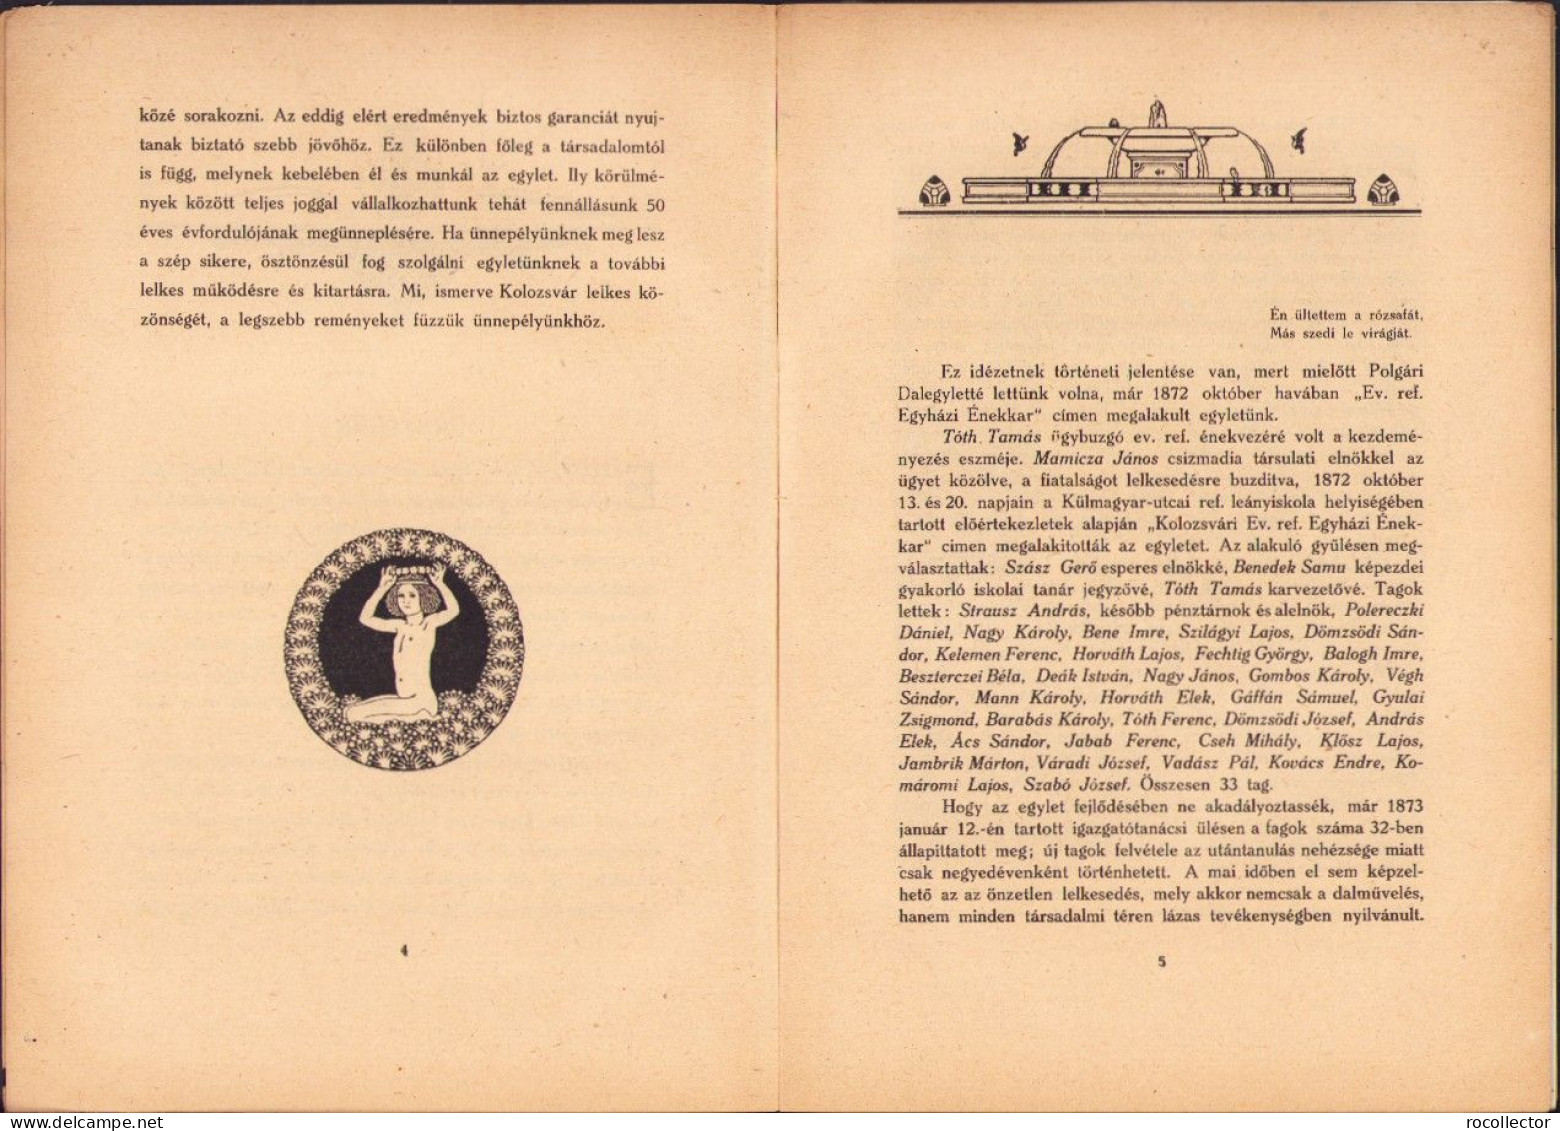 A Kolozsvári Iparos Egylet Dalkőrének Emlékkönyve 1872-1923 összeállitotta Csizhegyi Sándor, 1923 720SPN - Livres Anciens